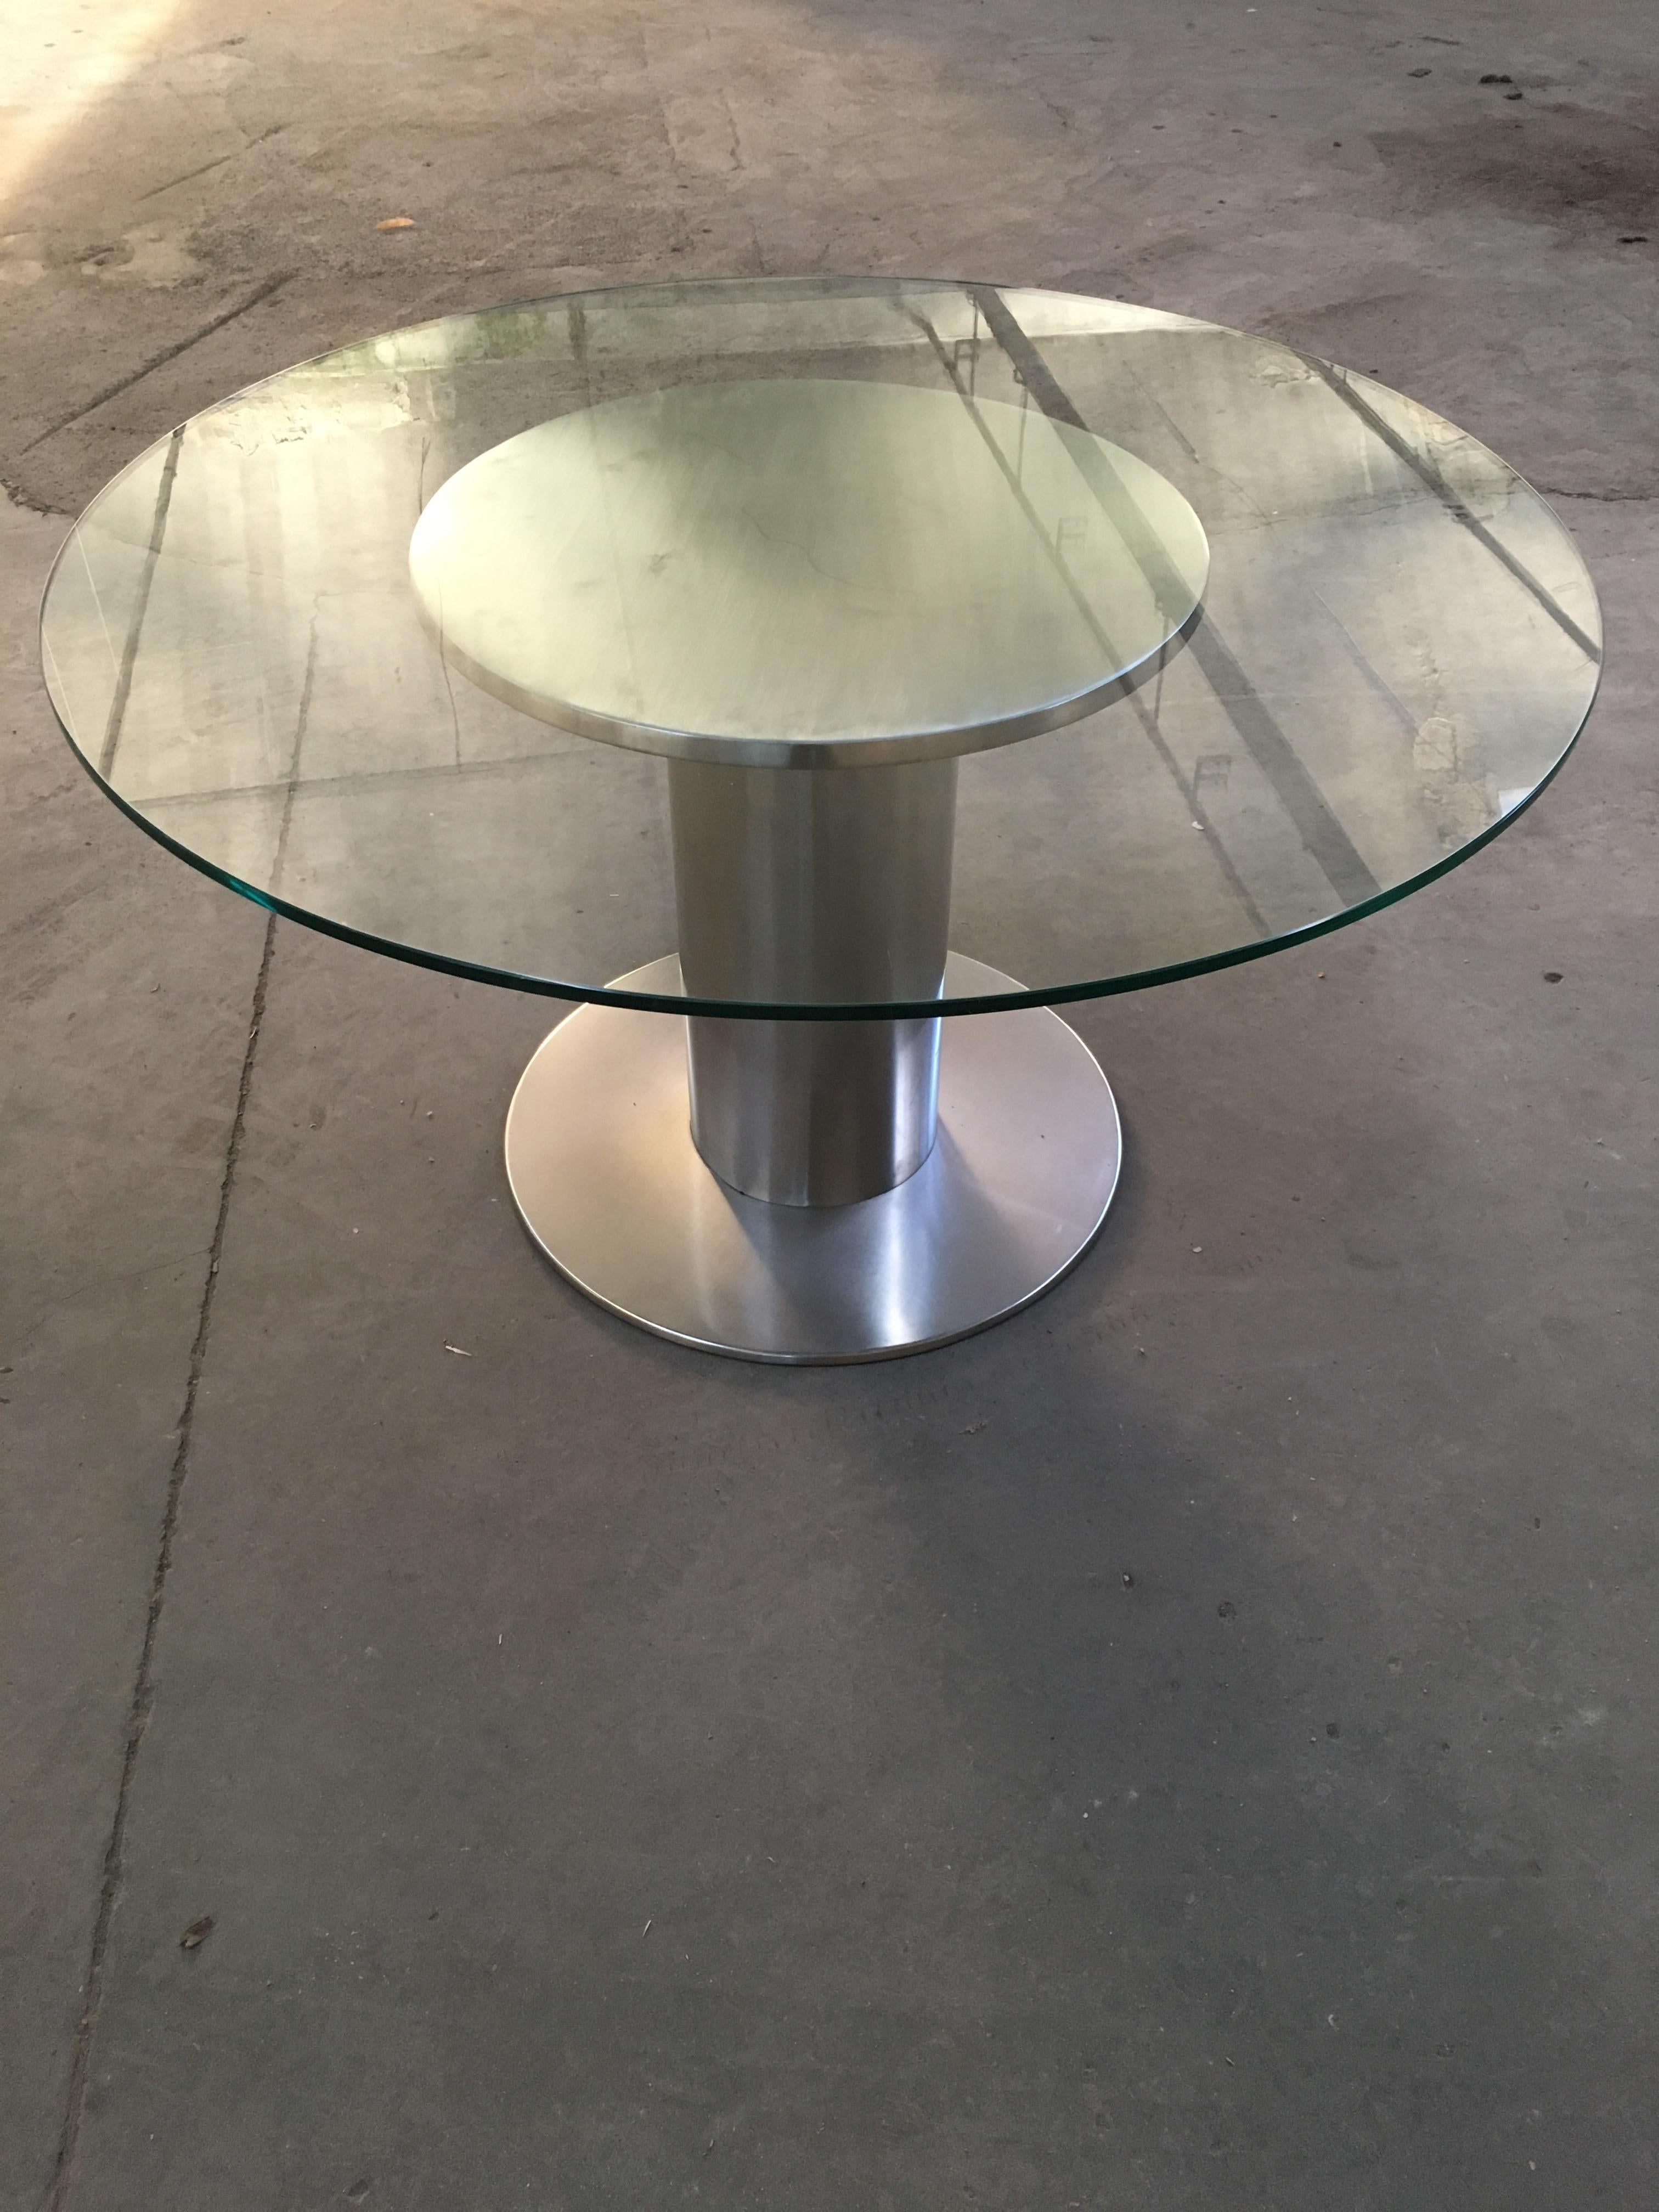 Table de salle à manger ou d'appoint en acier inoxydable chromé, de style italien moderne du milieu du siècle, avec plateau en verre rond.